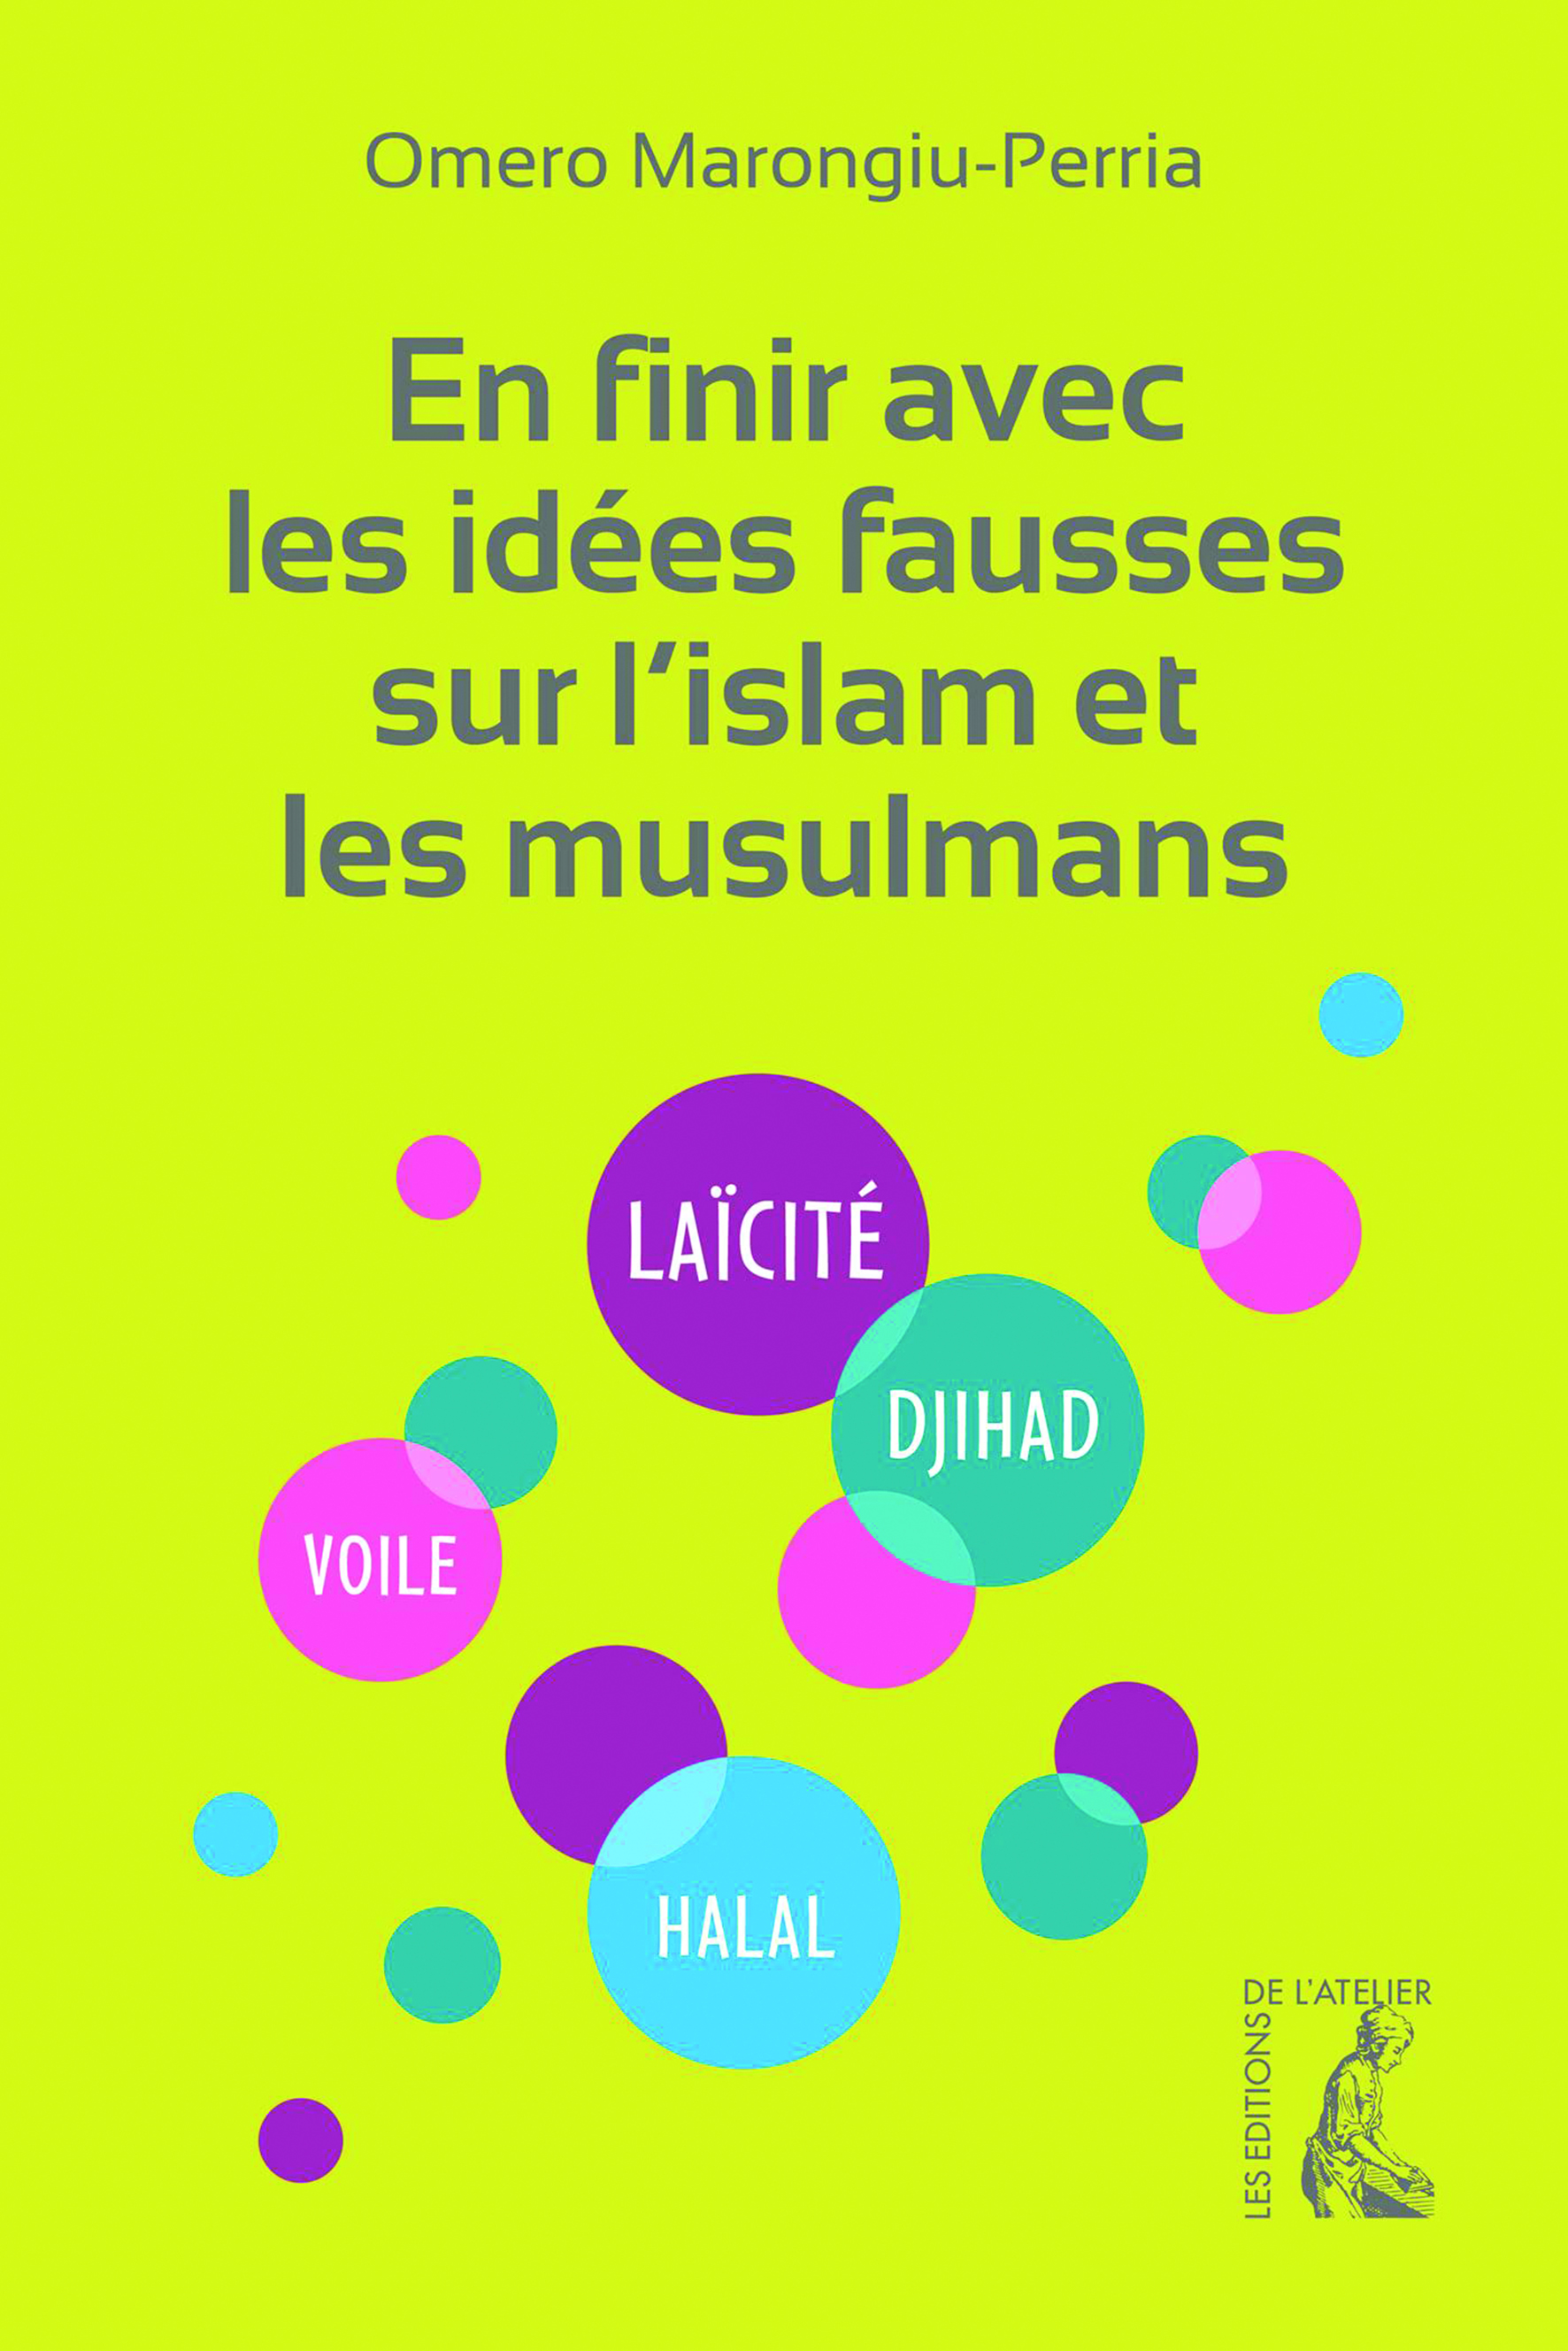 En finir avec les idées fausses sur l'islam et les musulmans - Omero Marongiu-Perria - Éditions de l'Atelier